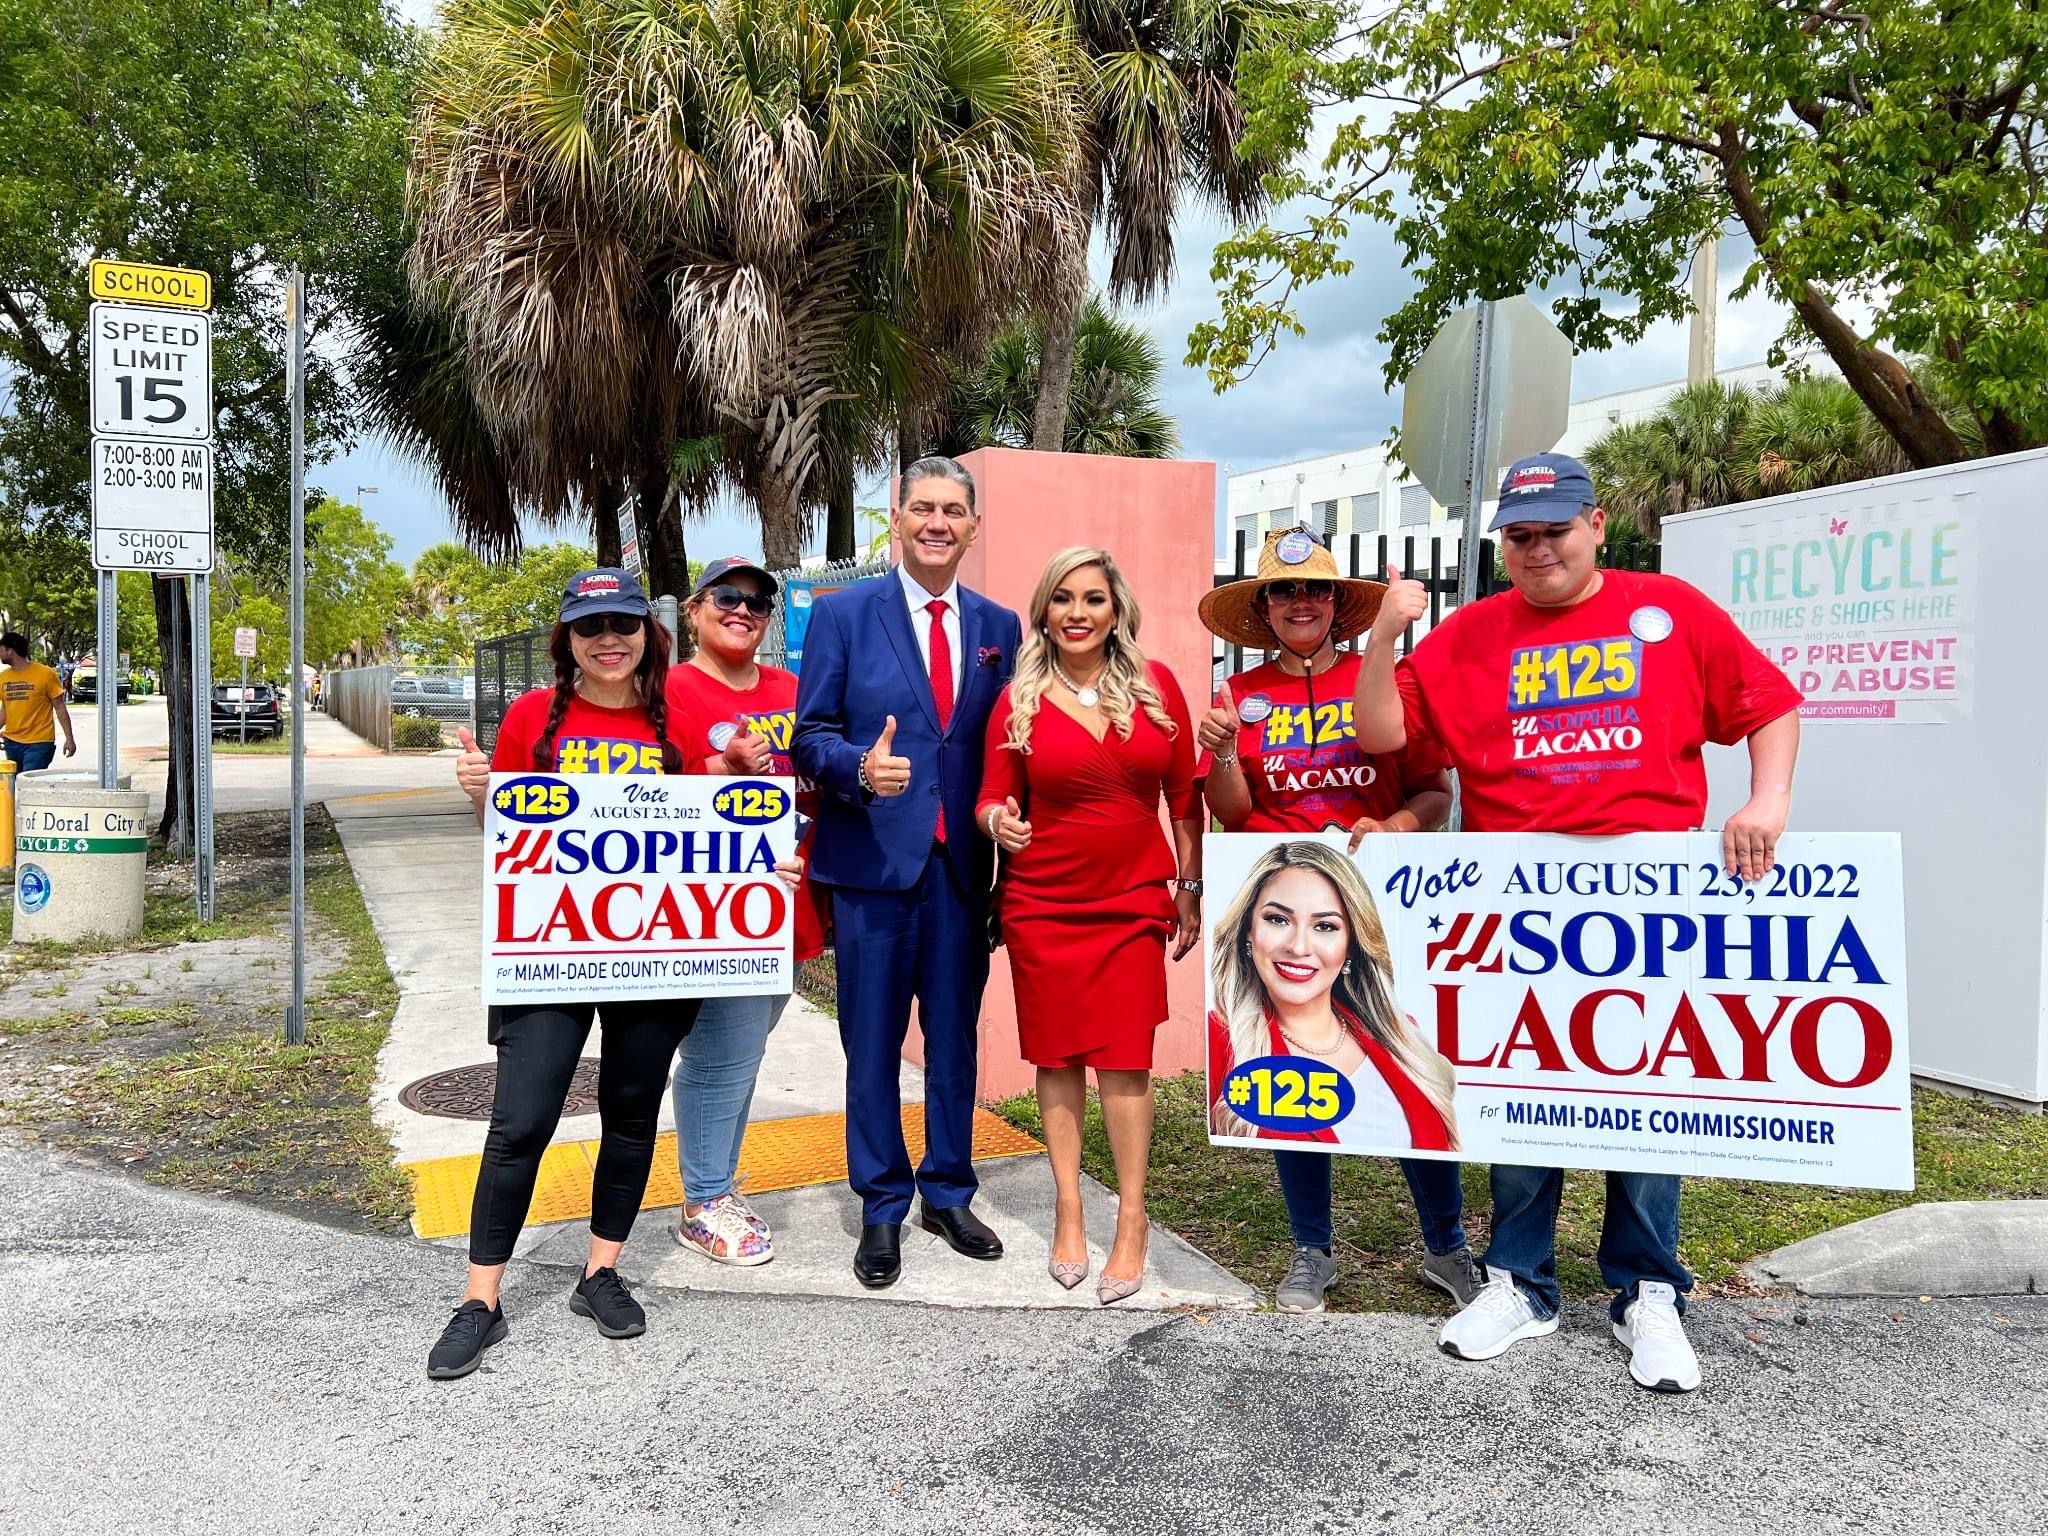 Algunas reflexiones sobre la campaña de Sophia Lacayo